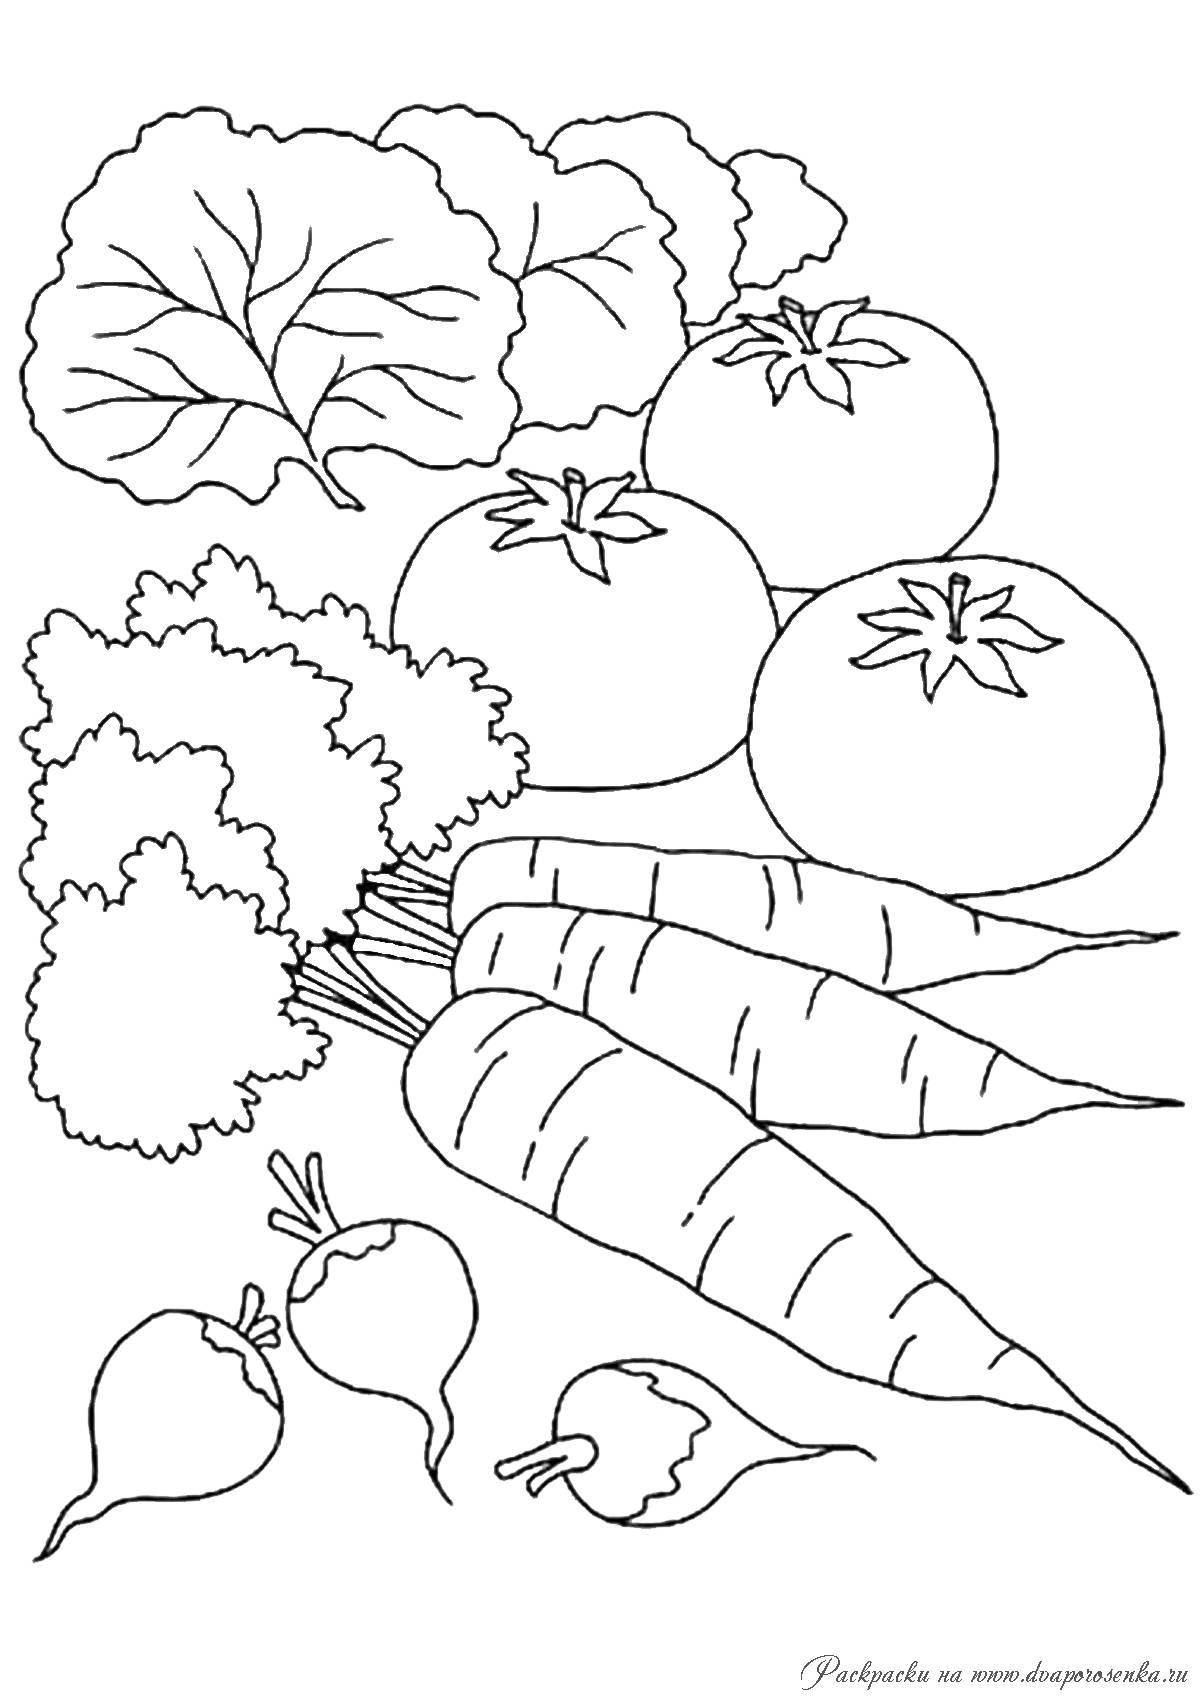 Раскраска с цветными овощами для детей 3-4 лет